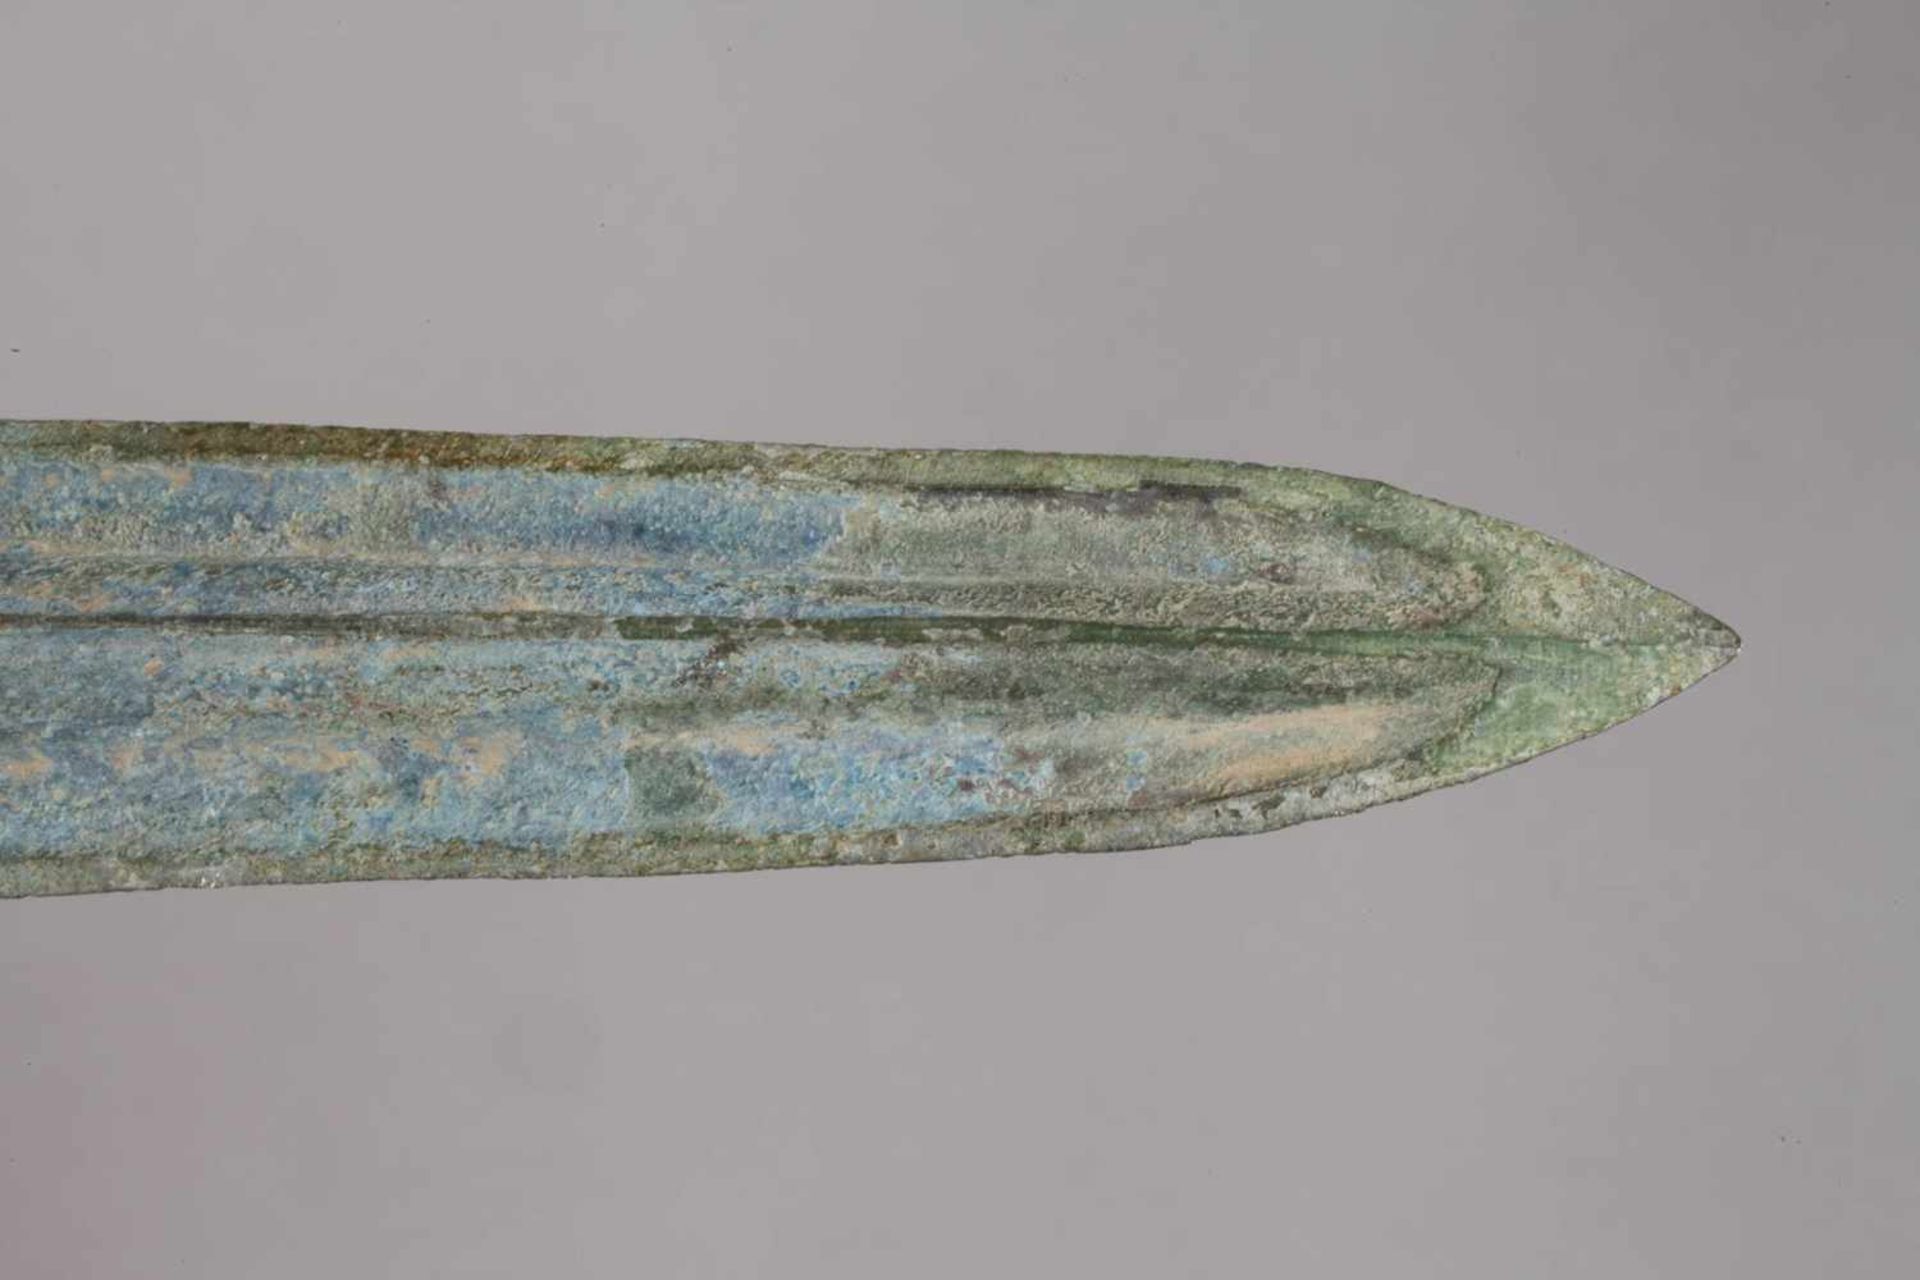 Altchinesische Speerspitzeunbestimmt, vielleicht Shang-Dynastie, 12. Jh. v. Chr., Bronze, - Bild 4 aus 4